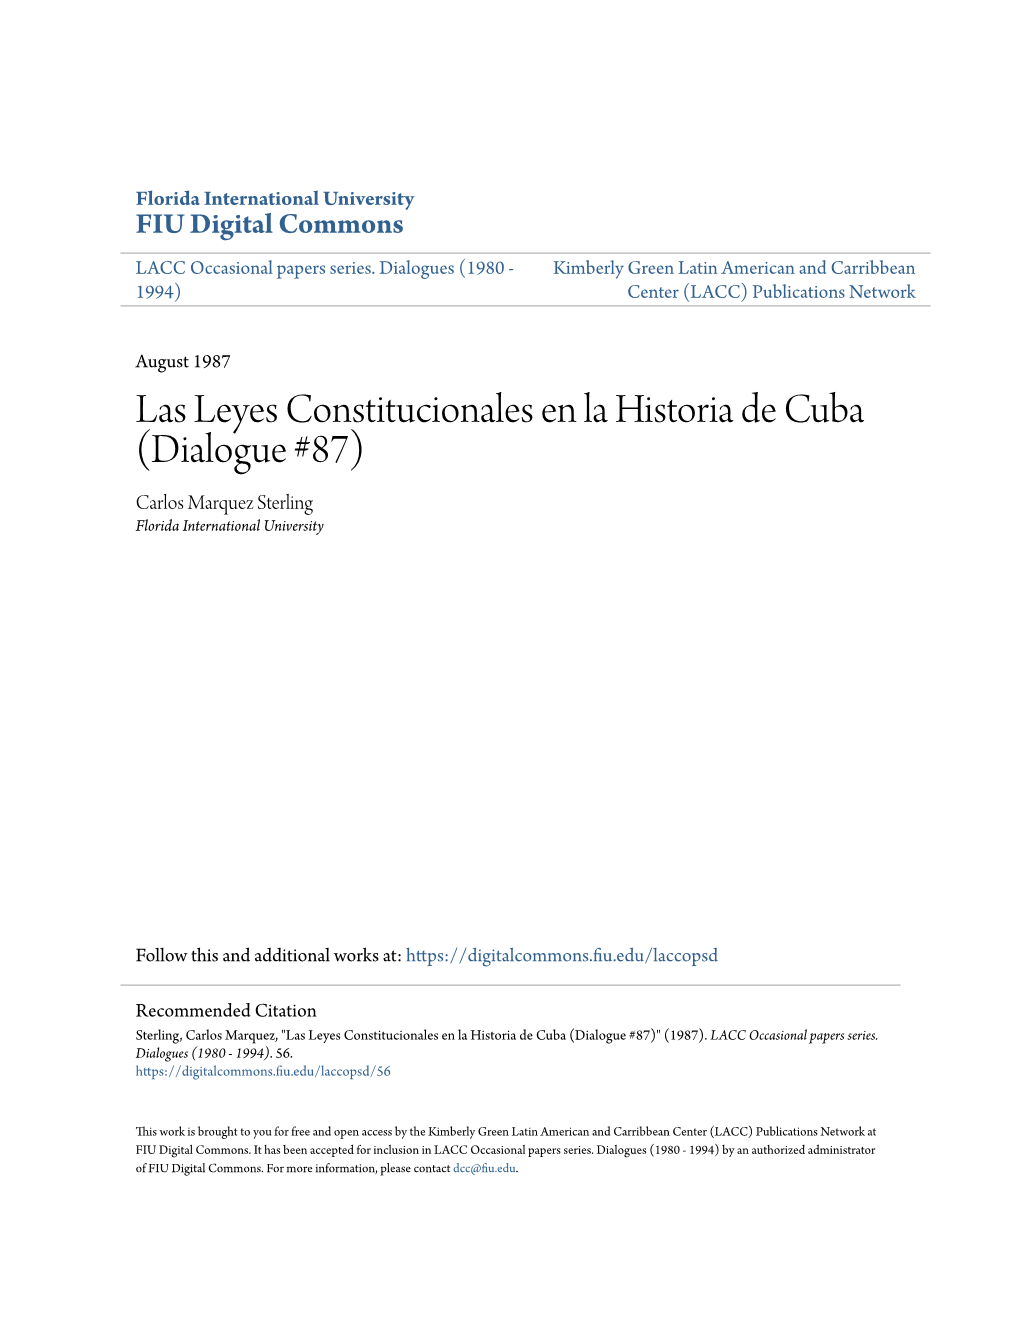 Las Leyes Constitucionales En La Historia De Cuba (Dialogue #87) Carlos Marquez Sterling Florida International University